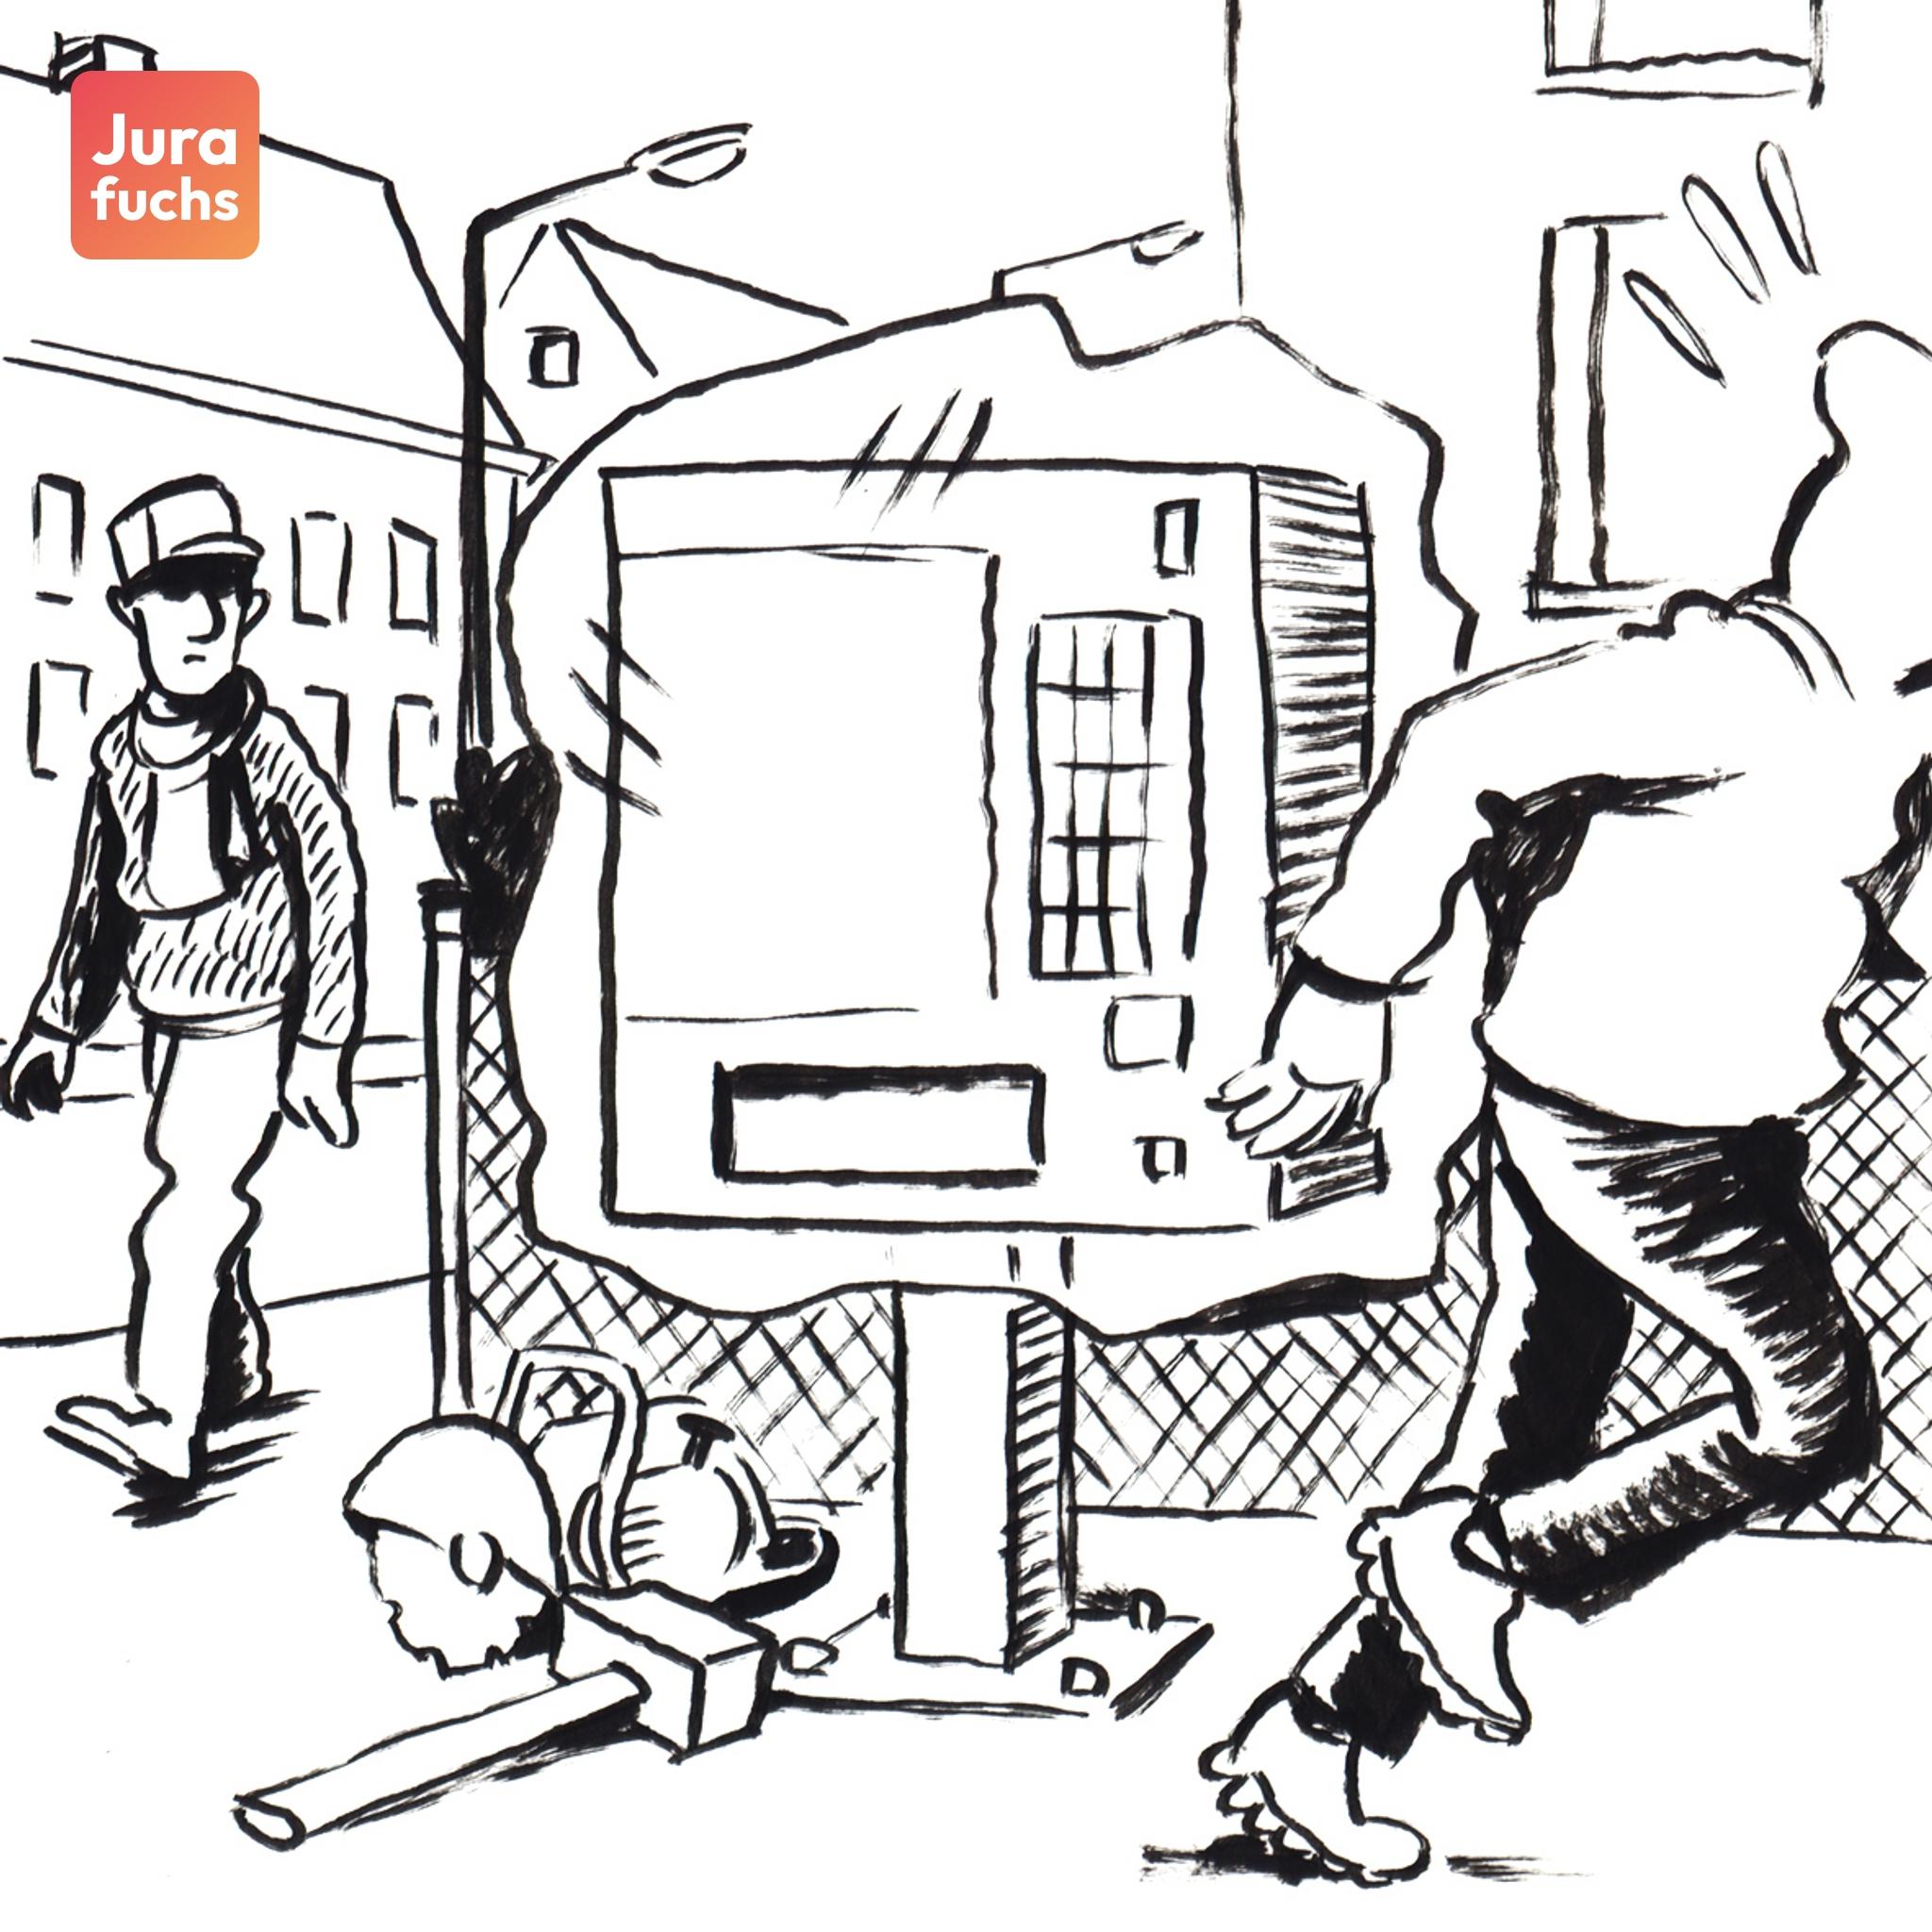 Jurafuchs Illustration: T hat einen Zigarettenautomaten mit einer Plane verhüllt, um diesen aufzubrechen und den Inhalt zu stehlen. Als jemand vorbeiläuft und dies sieht, rennt er weg.